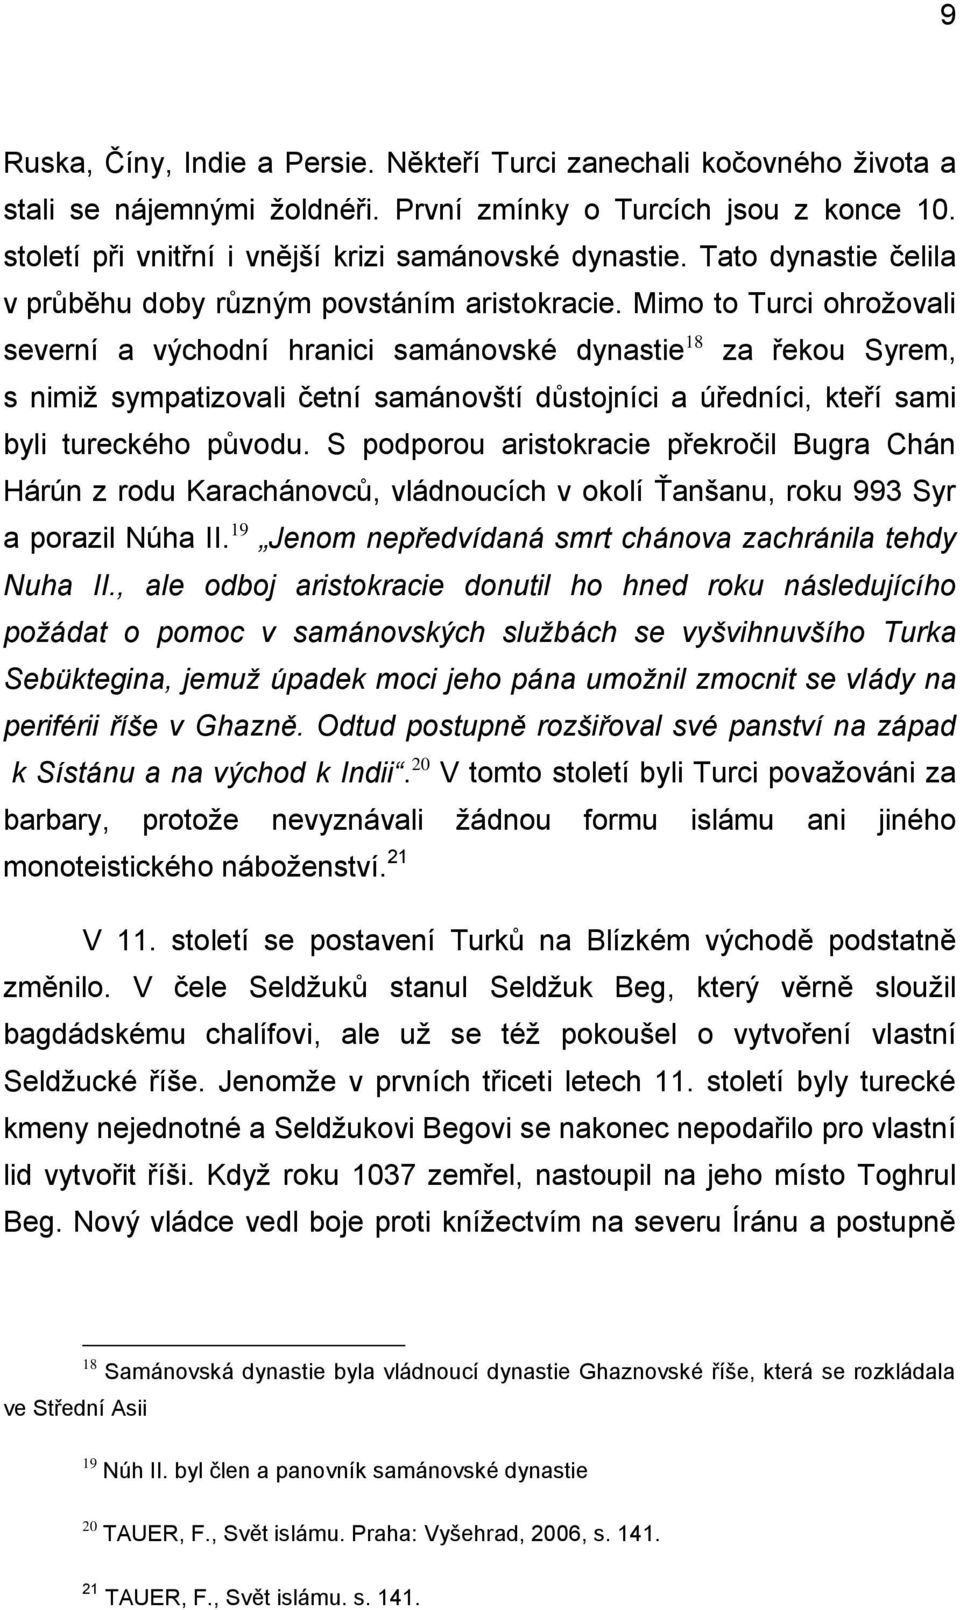 Mimo to Turci ohrožovali severní a východní hranici samánovské dynastie 18 za řekou Syrem, s nimiž sympatizovali četní samánovští důstojníci a úředníci, kteří sami byli tureckého původu.